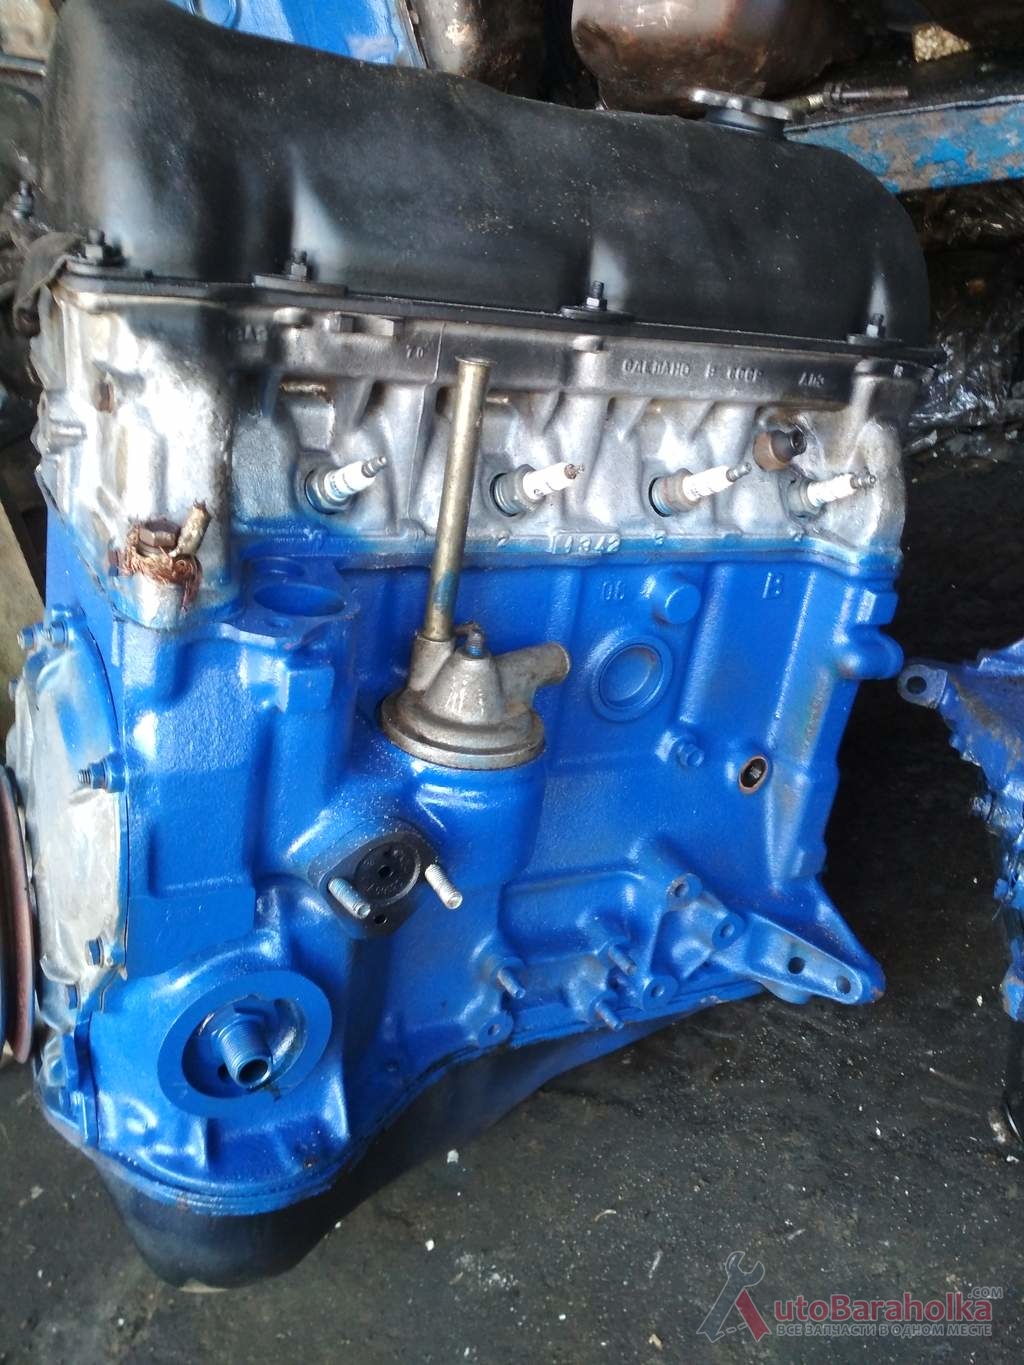 Продам Двигатель ВАЗ 2101 2103 2105 2106 2121 2123 с экспортных машин. без трещин и стука. проверенный Херсон